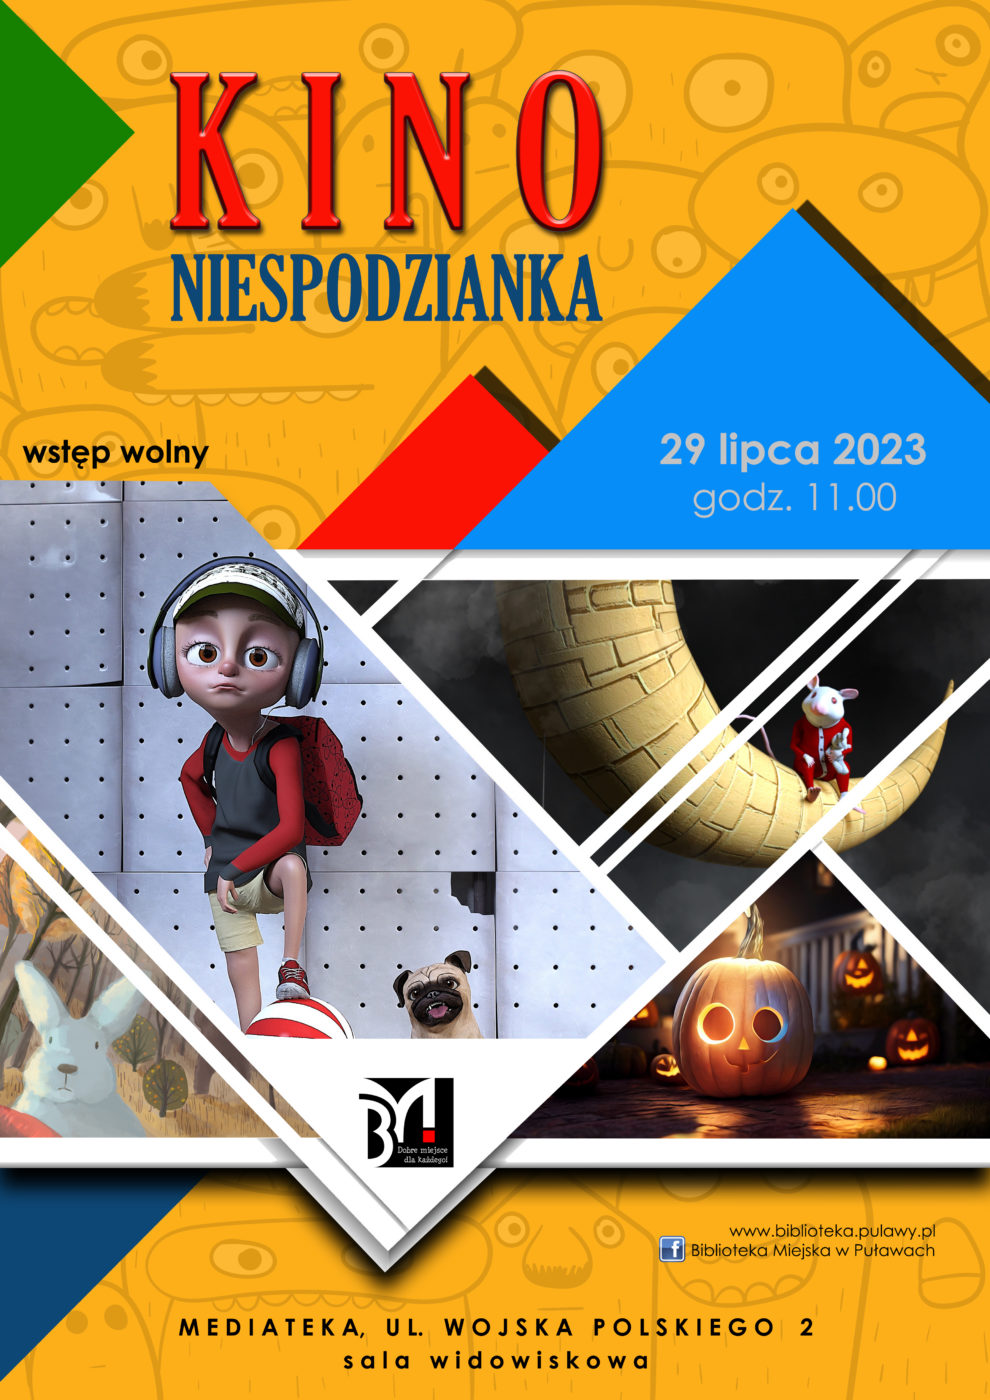 Plakat informujący o seansie filmowym dla dzieci w ramach cyklu Kino Niespodzianka. Termin: 29 lipca 2023, godz. 11.00, Mediateka, ul. Wojska Polskiego 2.